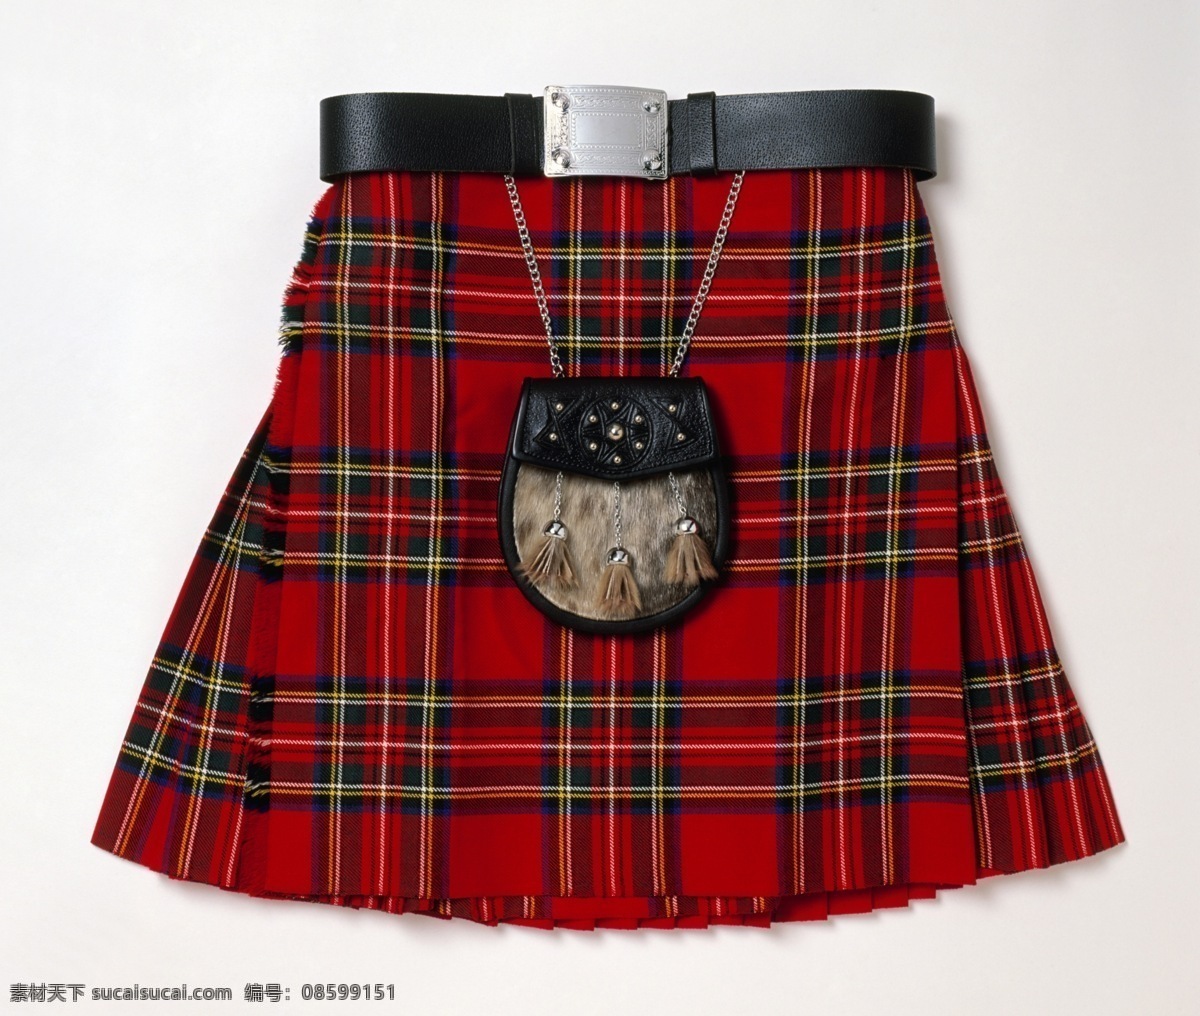 苏格兰裙 格子布纹 挎包 格子 格子布 苏格兰情调 苏格兰红裙 格子裙 底纹